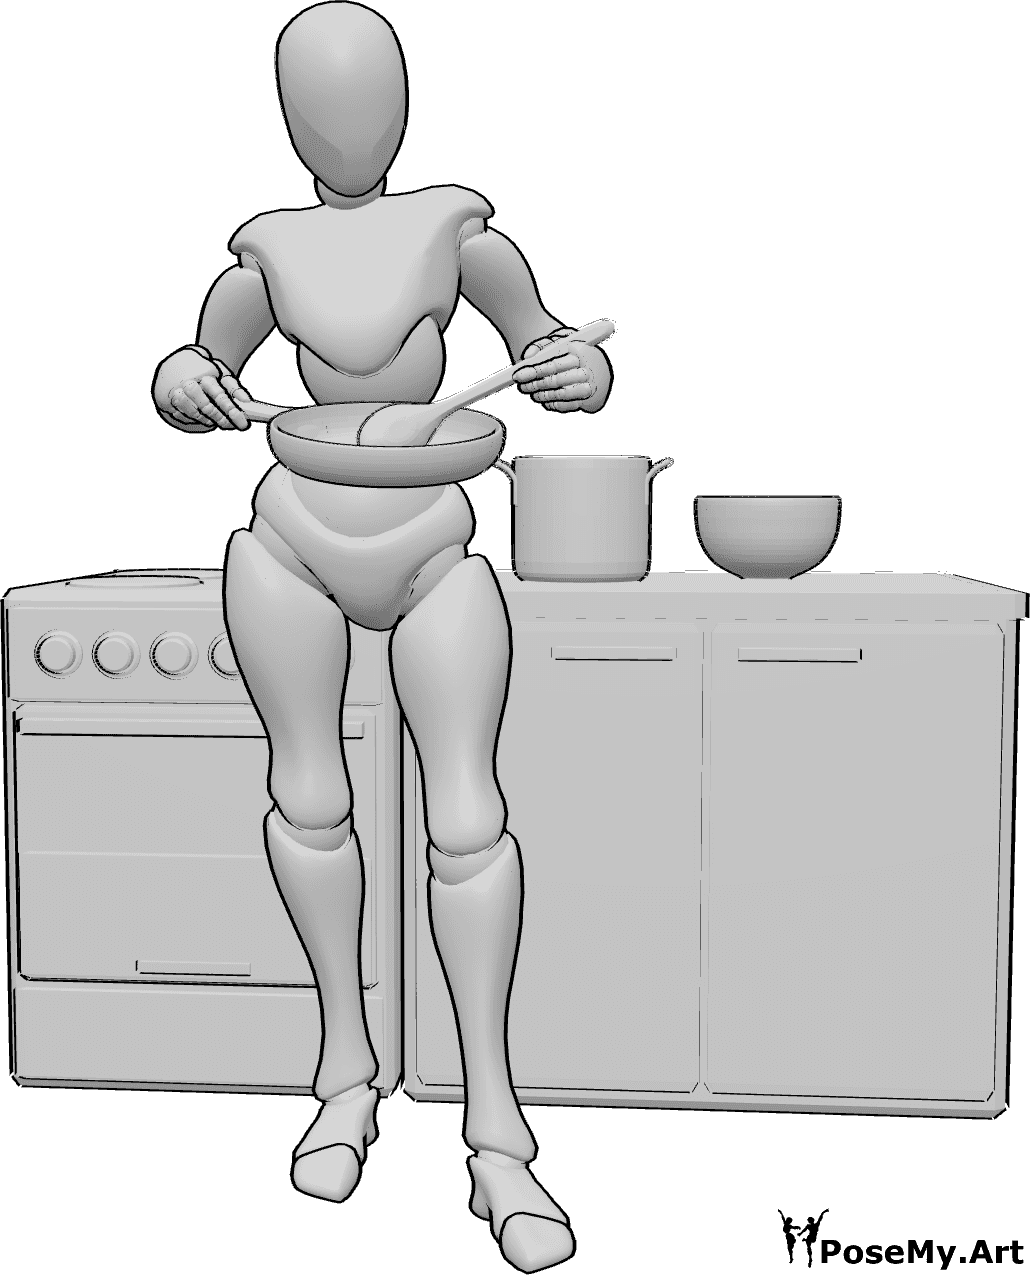 Referência de poses- Pose de cozinheiro em pé a mexer - Mulher de pé, segurando um tacho na mão direita e mexendo com uma colher de pau na mão esquerda